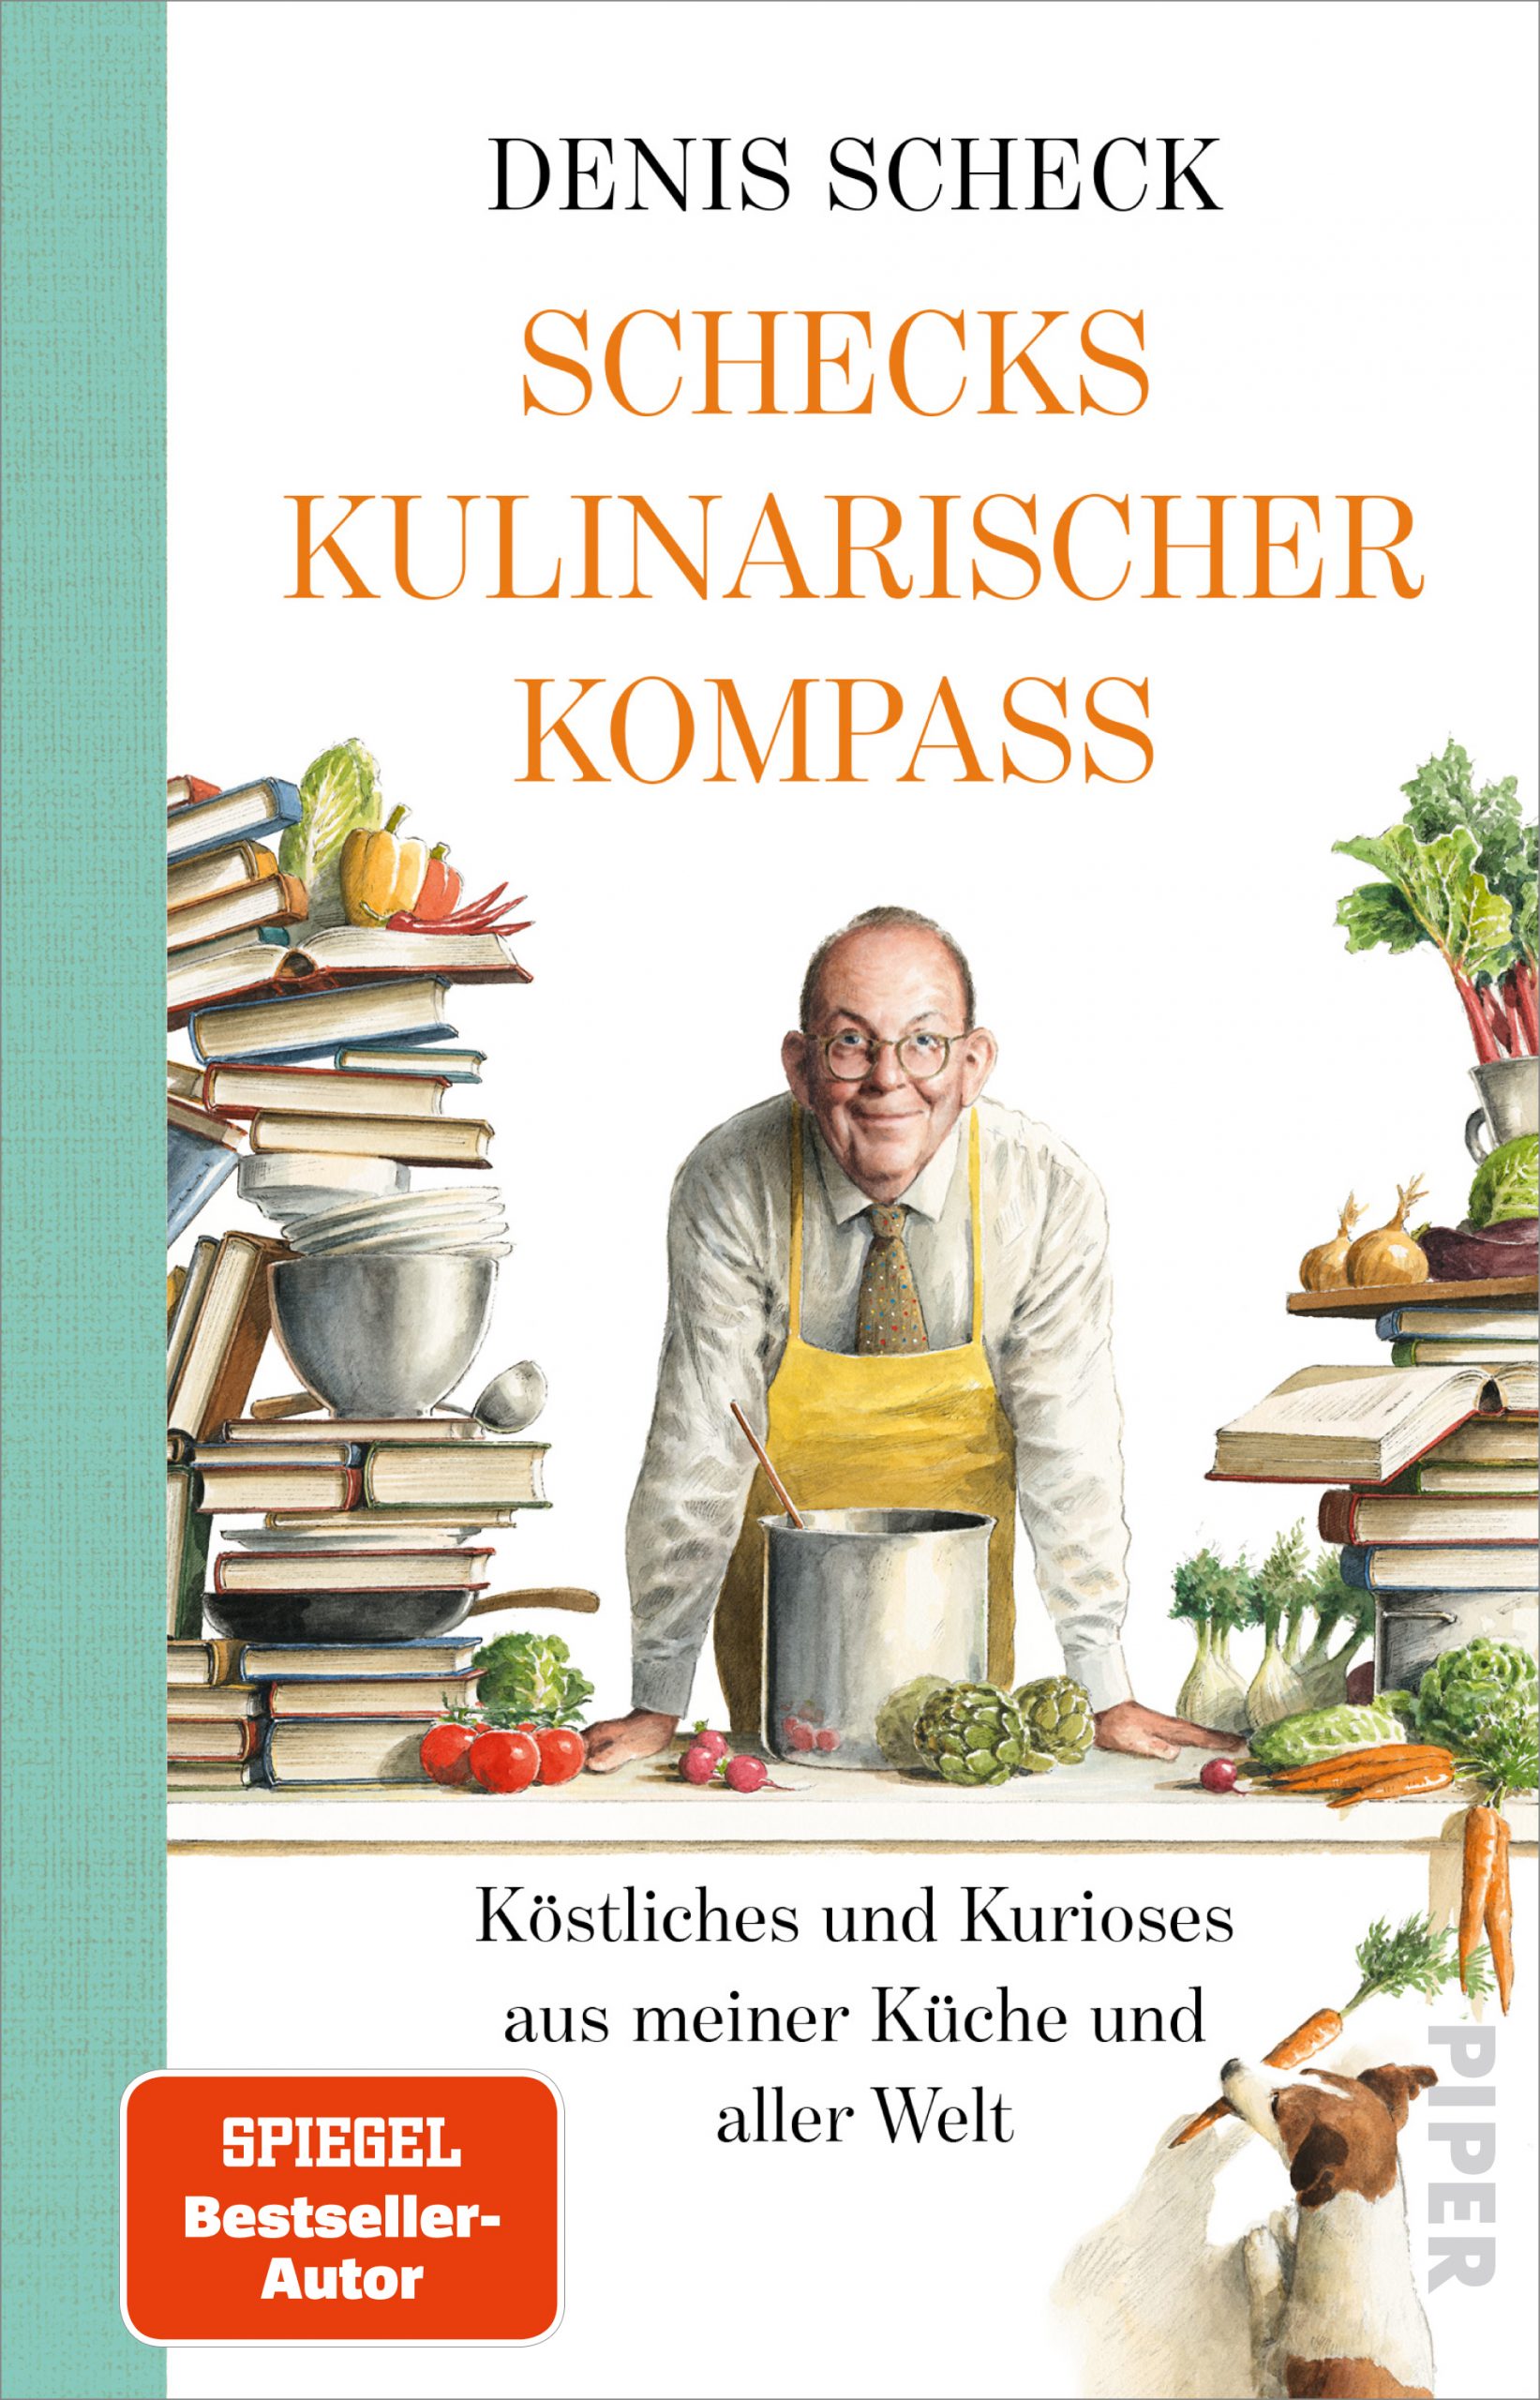 Denis Scheck präsentiert »Schecks kulinarischer Kompass« Parkbuchhandlung Buchhandlung Bonn Bad Godesberg